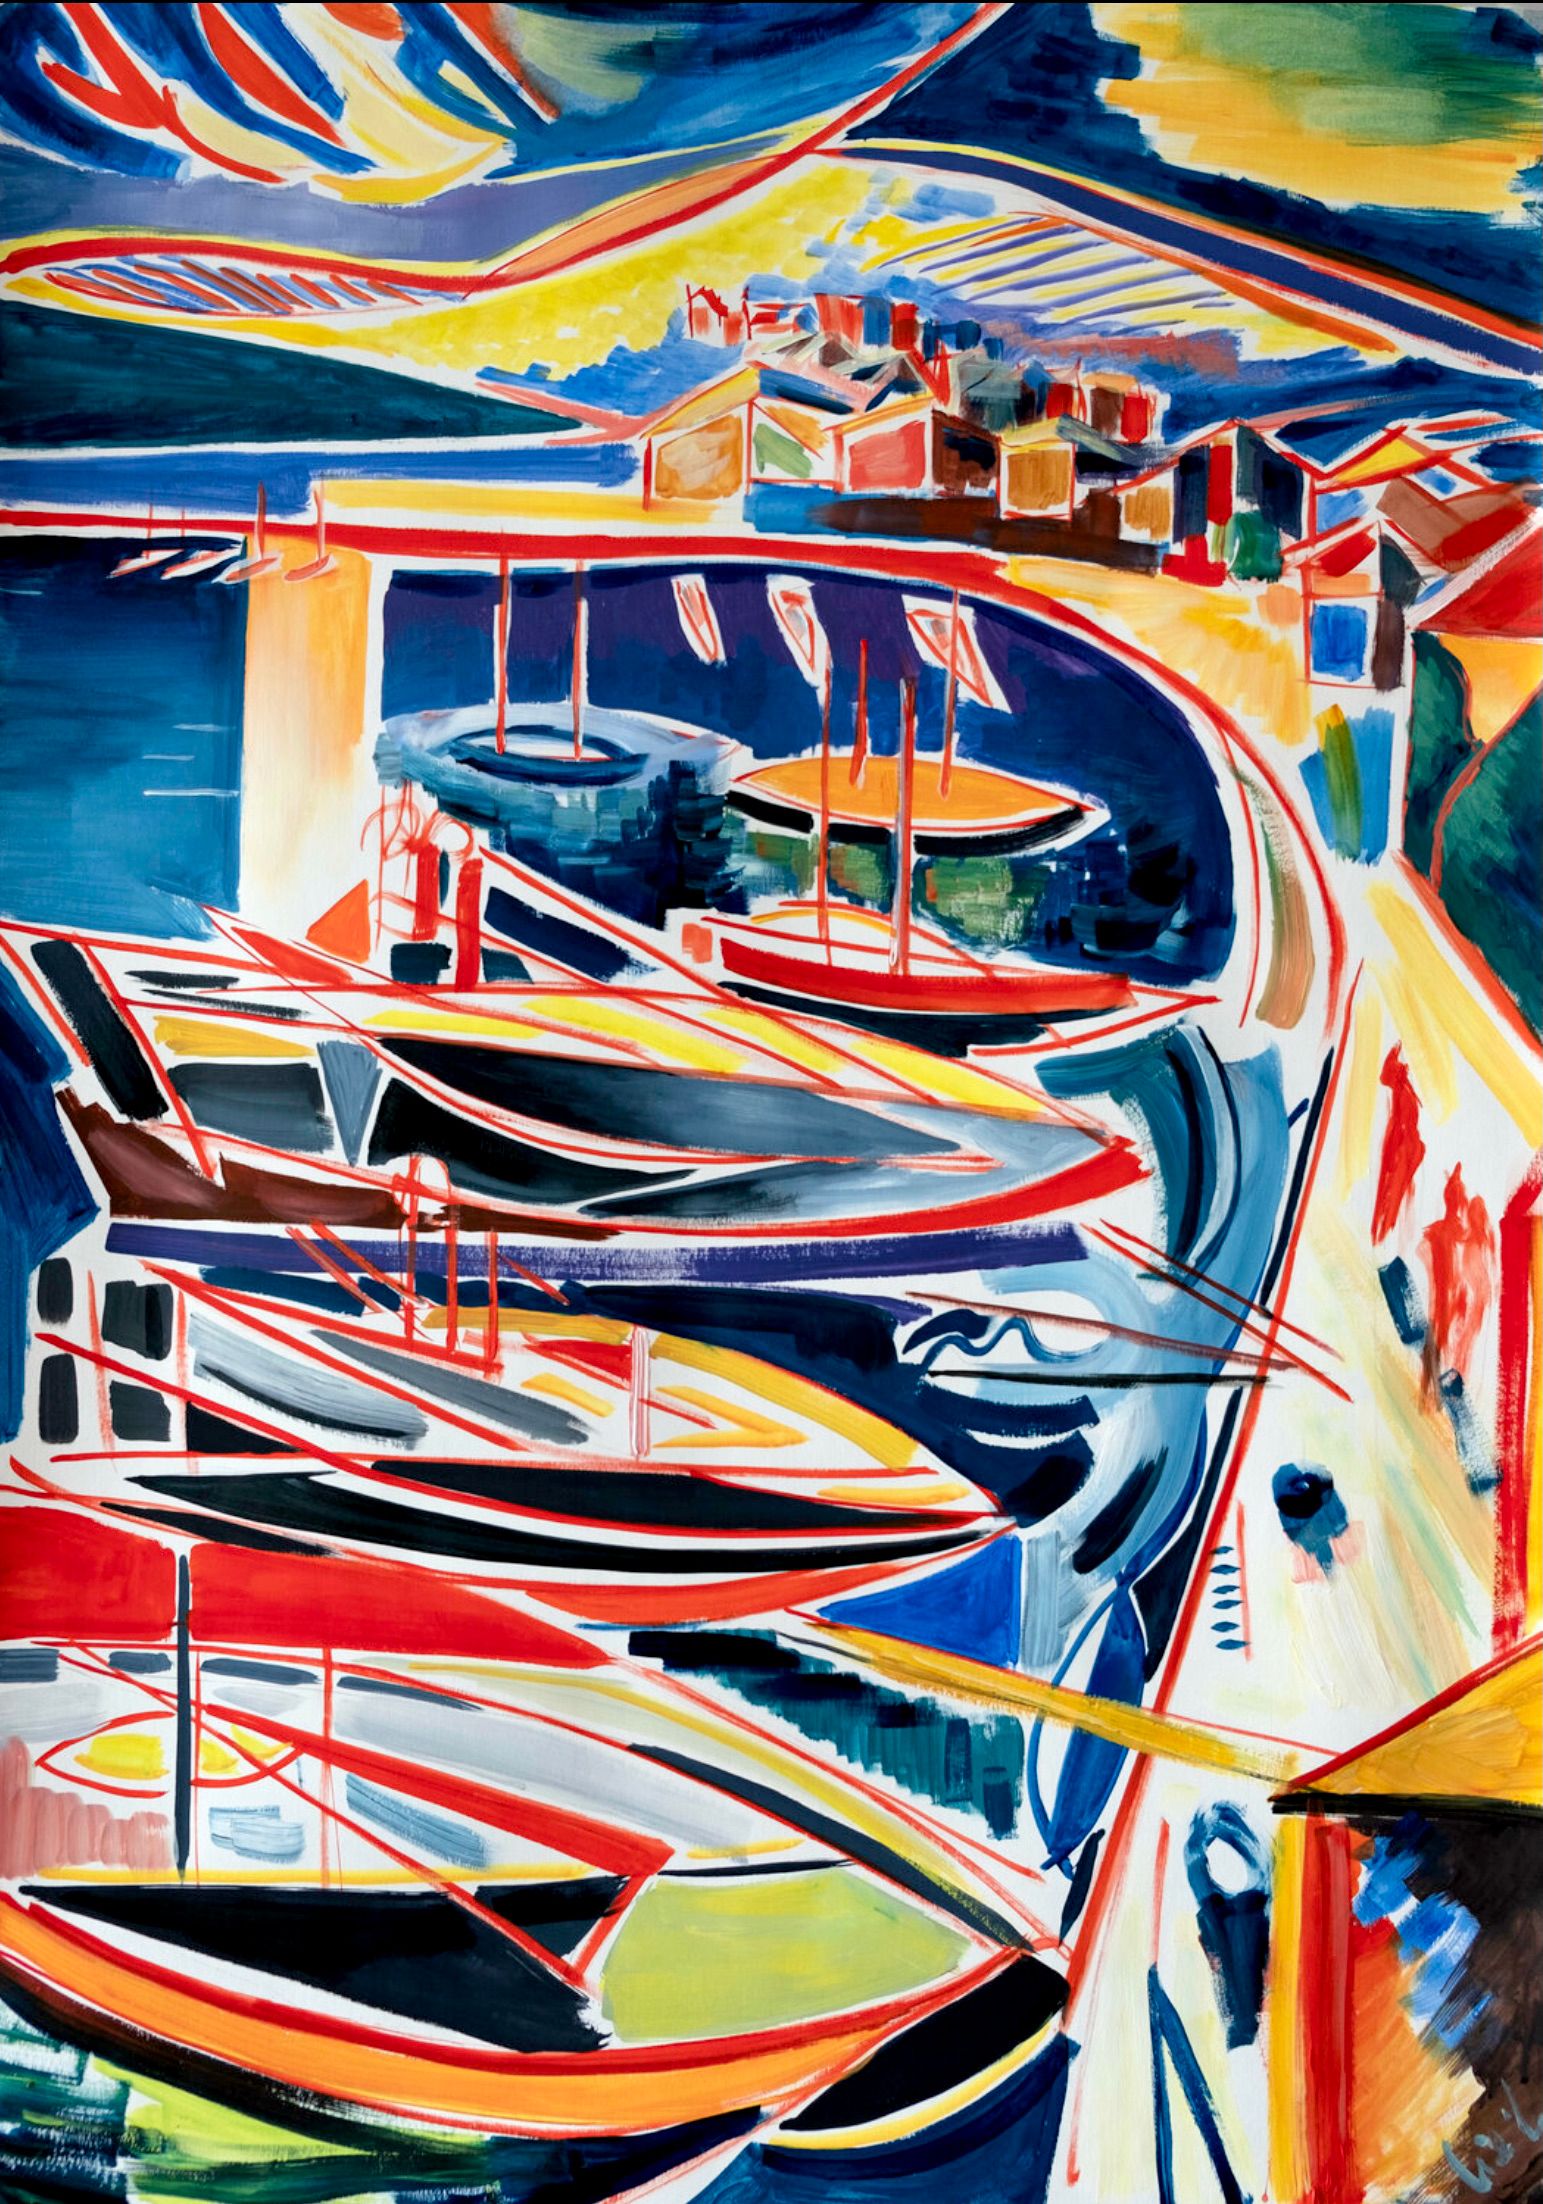 MECESLA Maciej Cieśla, "Portofino Italy in abstract forms", Peinture abstraite colorée du port italien avec des bateaux